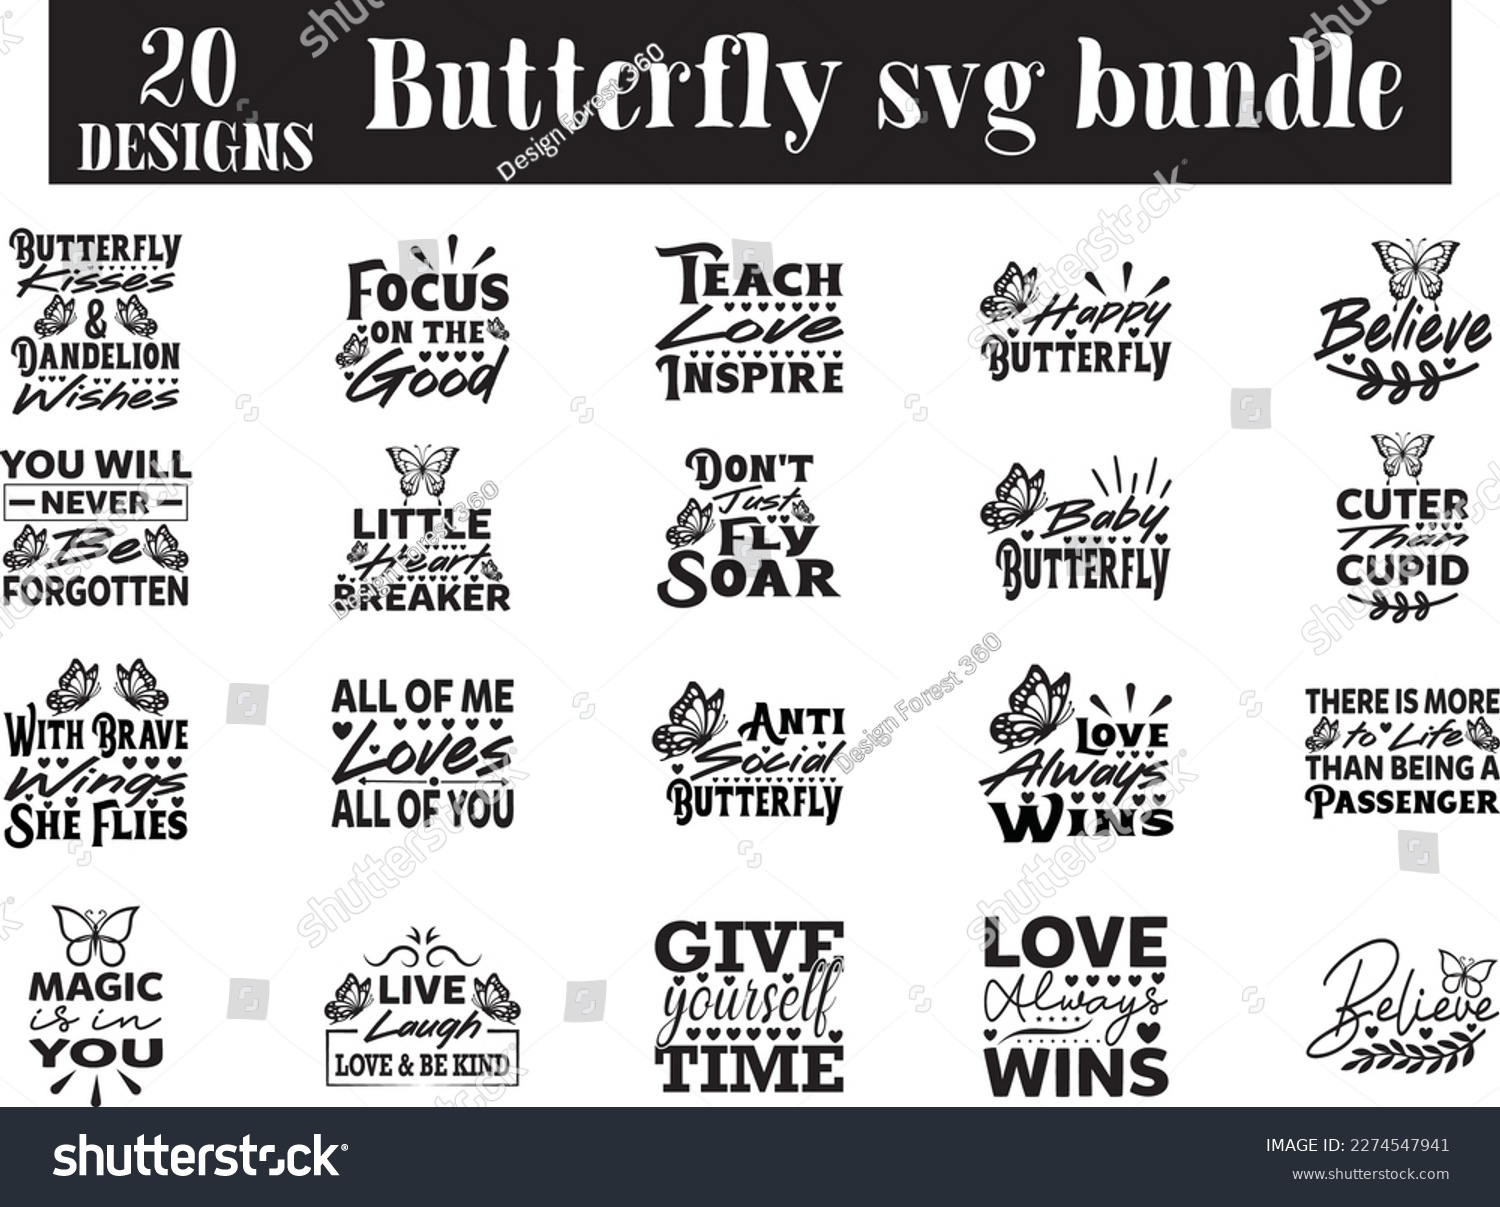 SVG of Butterfly svg bundle, Butterfly svg design svg